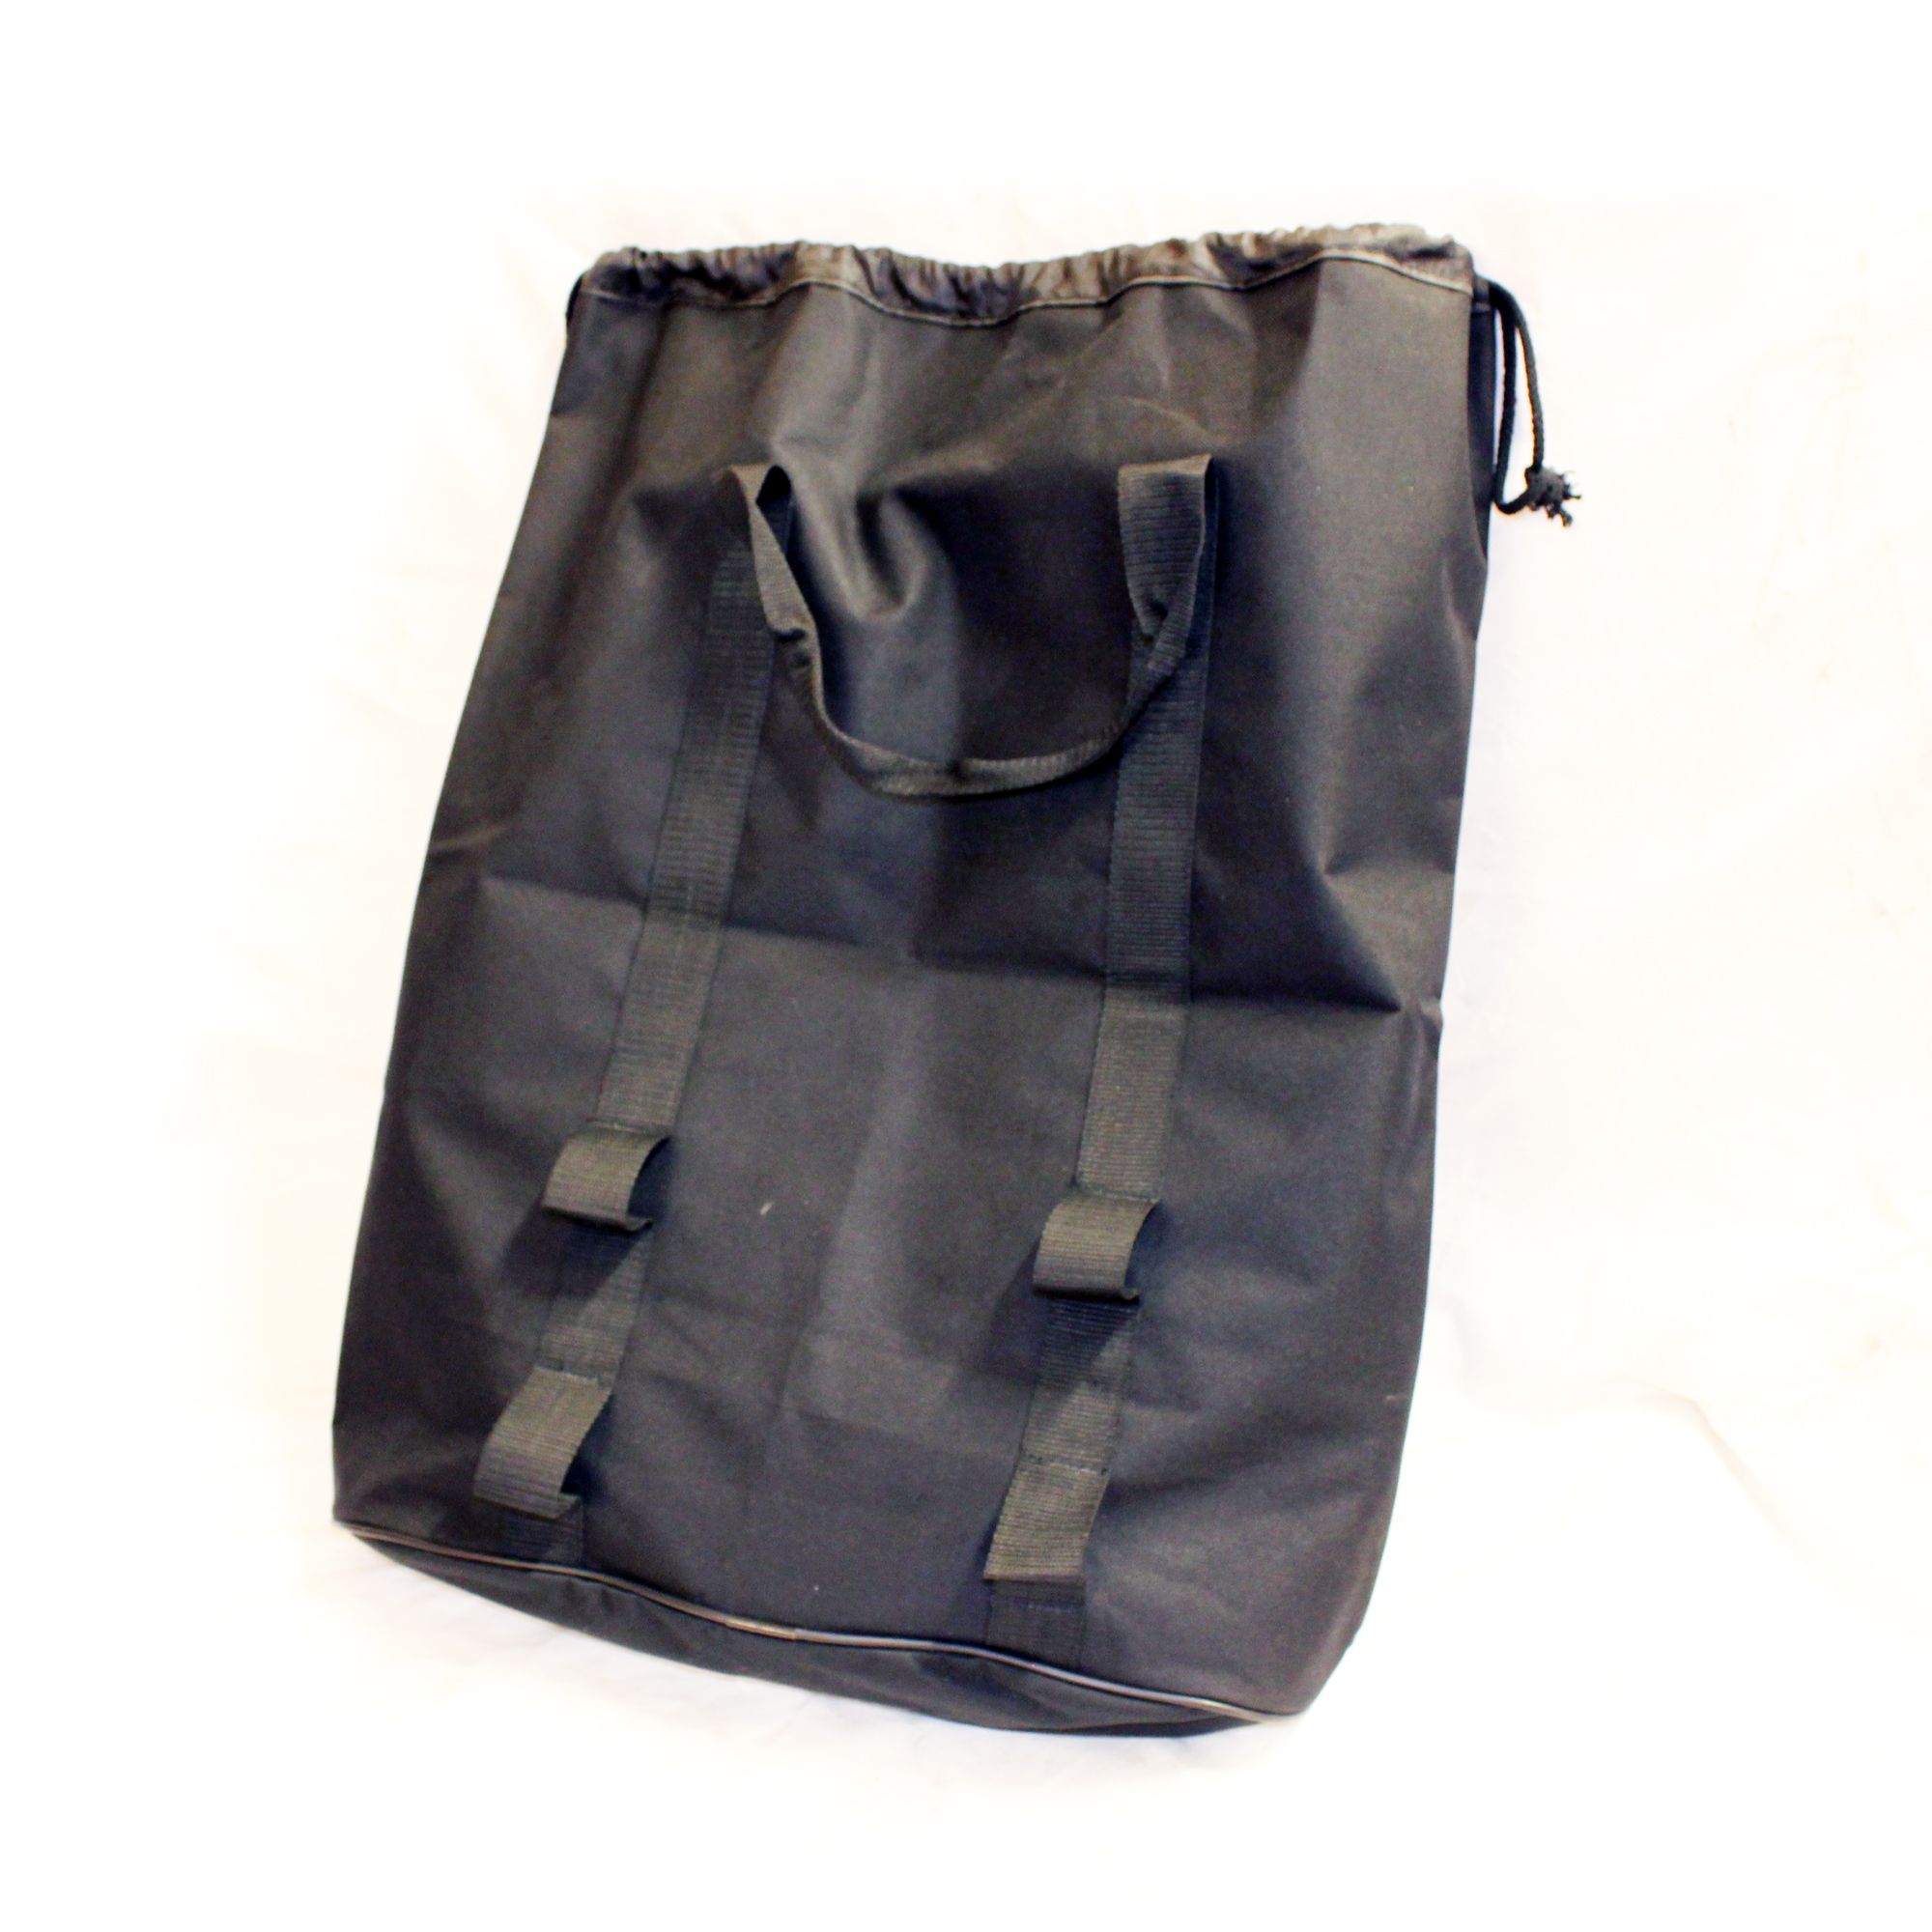 Aqua Pro Holdall Accessories Bag